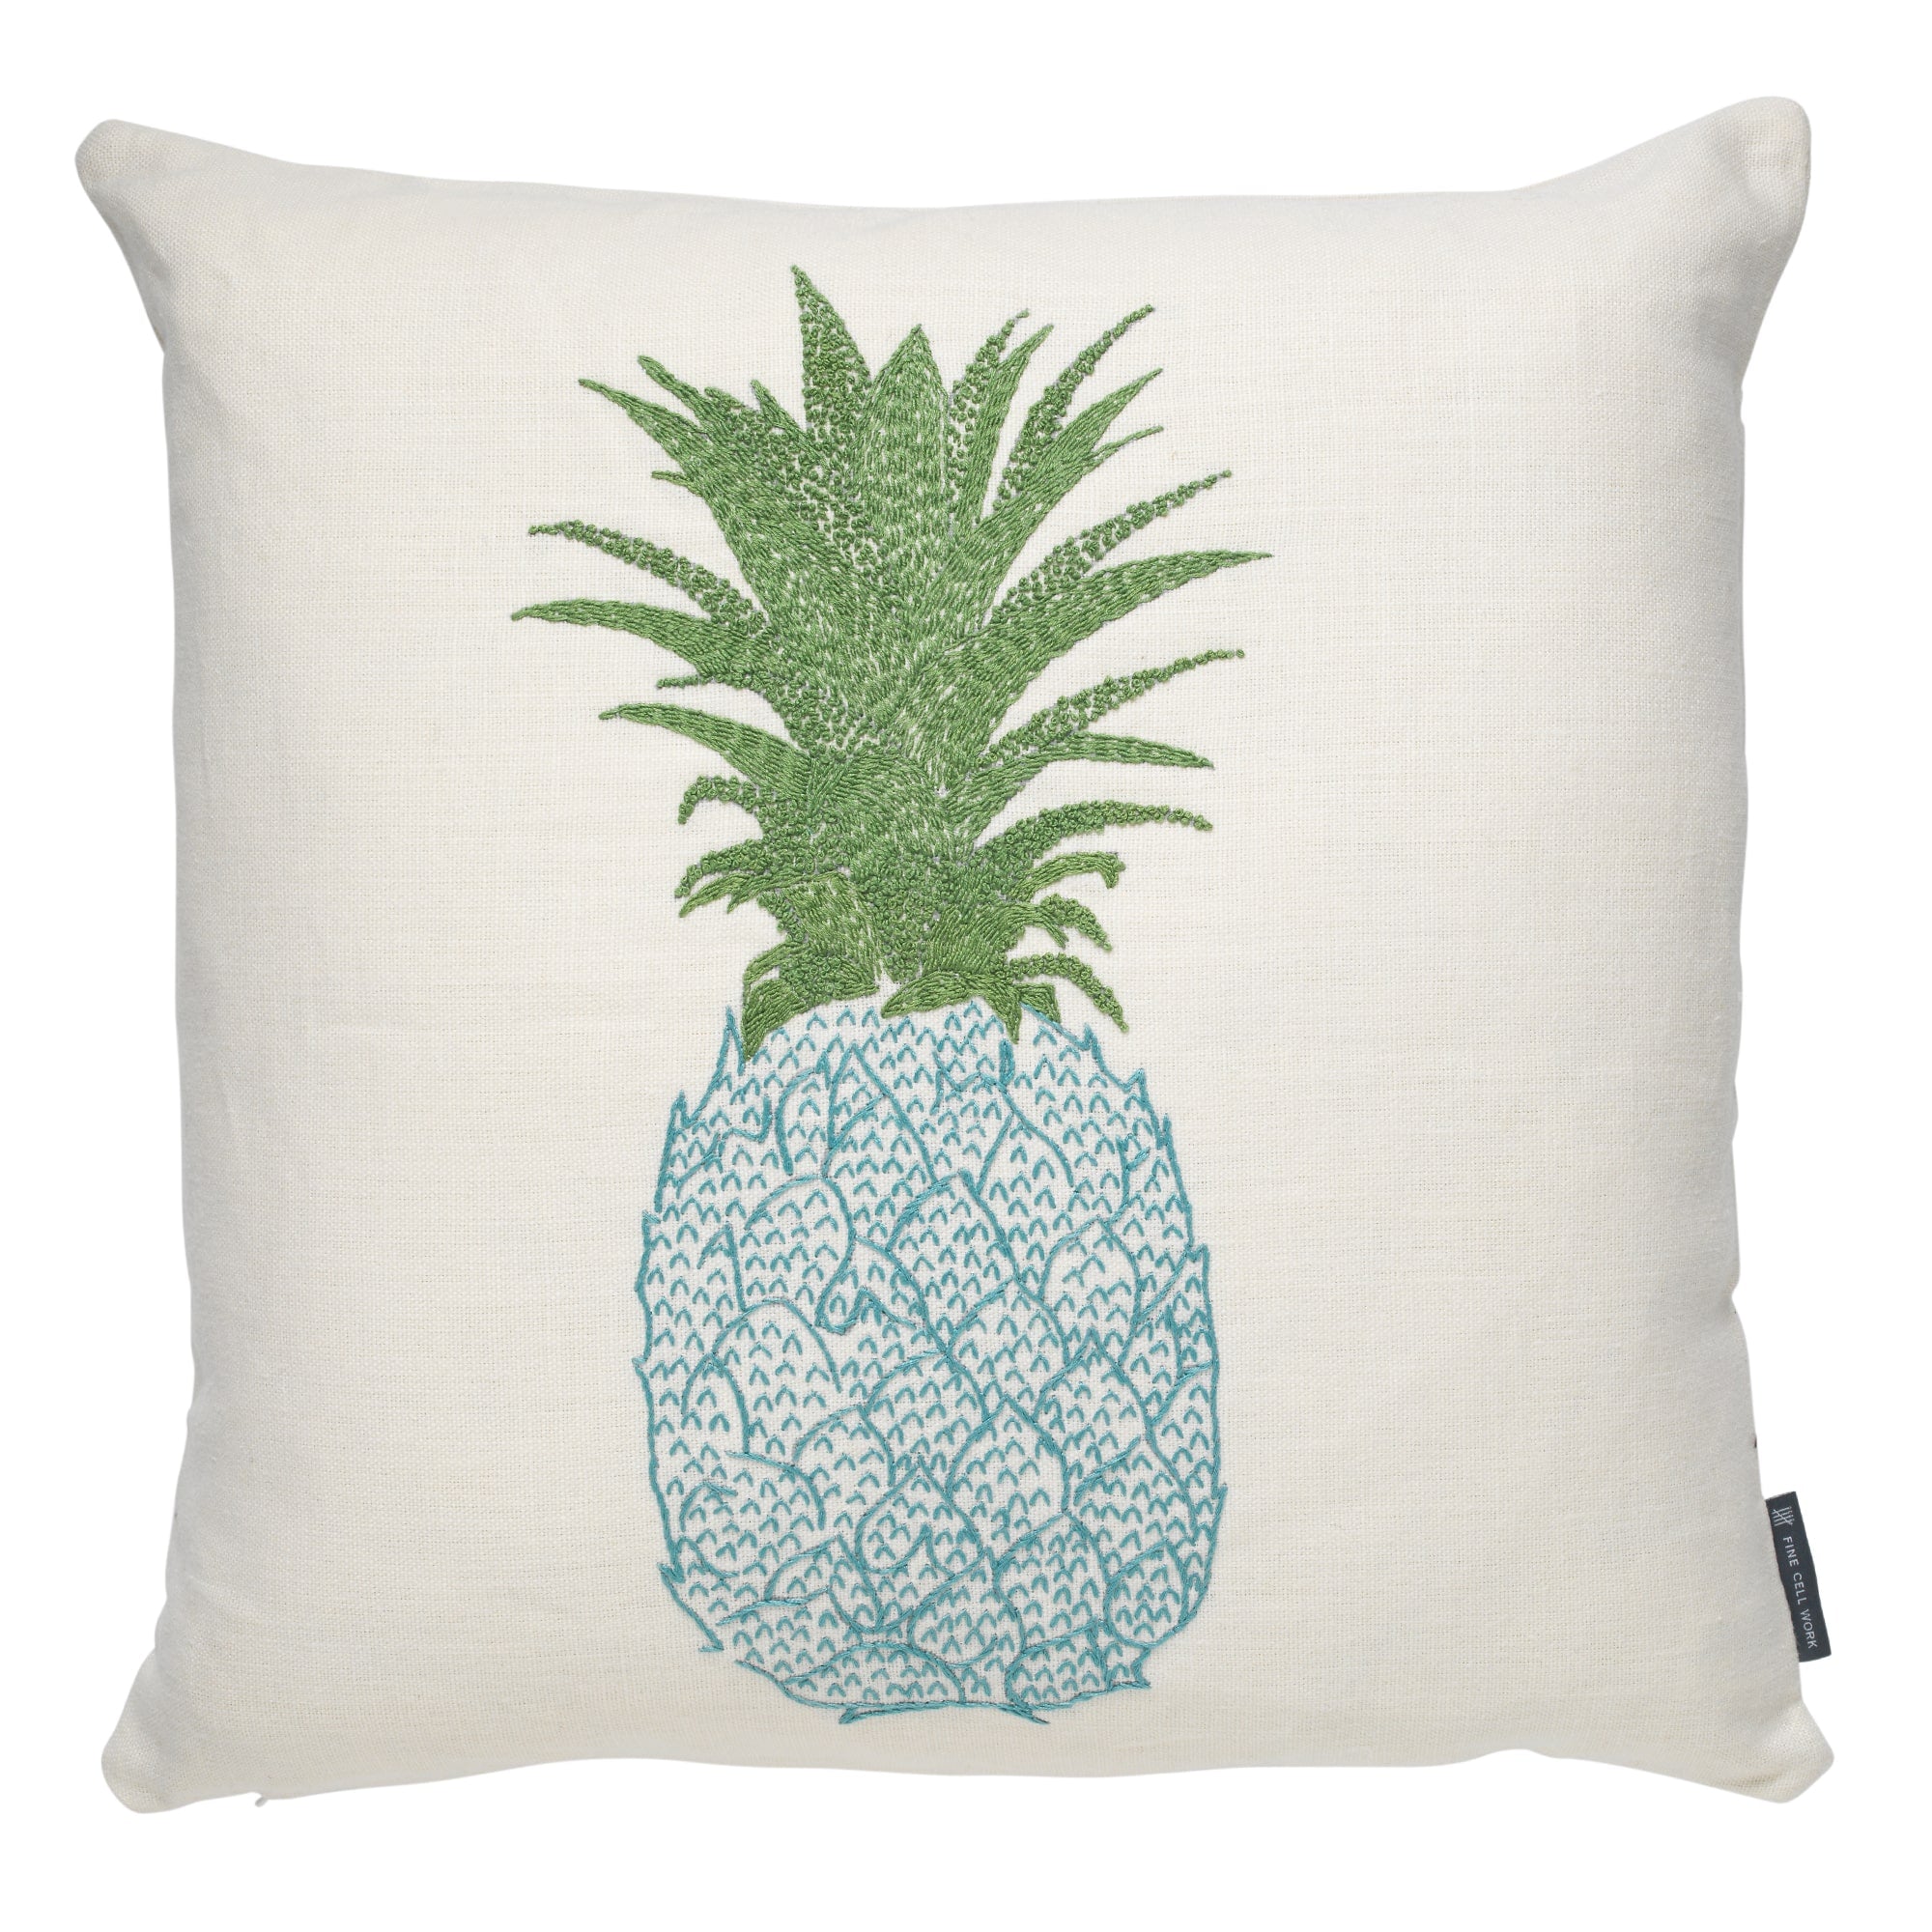 Hand-Embroidered-Pineapple-Cushion-Blue-Green-min_f6662fa9-d708-4a08-a3ff-e9b7a4e45849.jpg